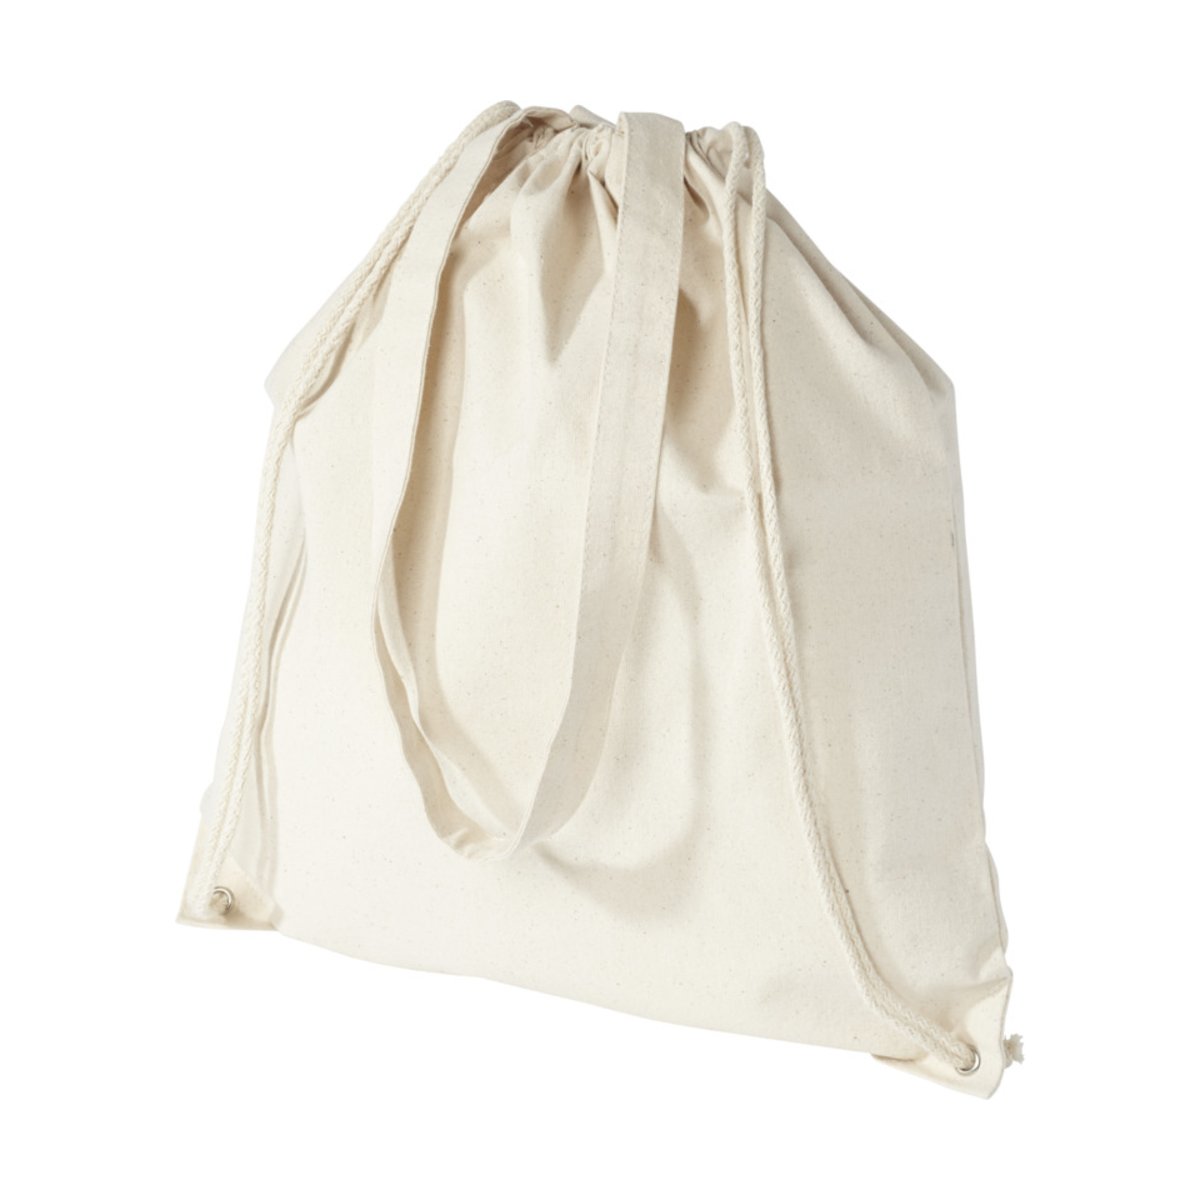 Plecak Eliza wykonany z bawełny o gramaturze 240 g/m² ze sznurkiem ściągającym